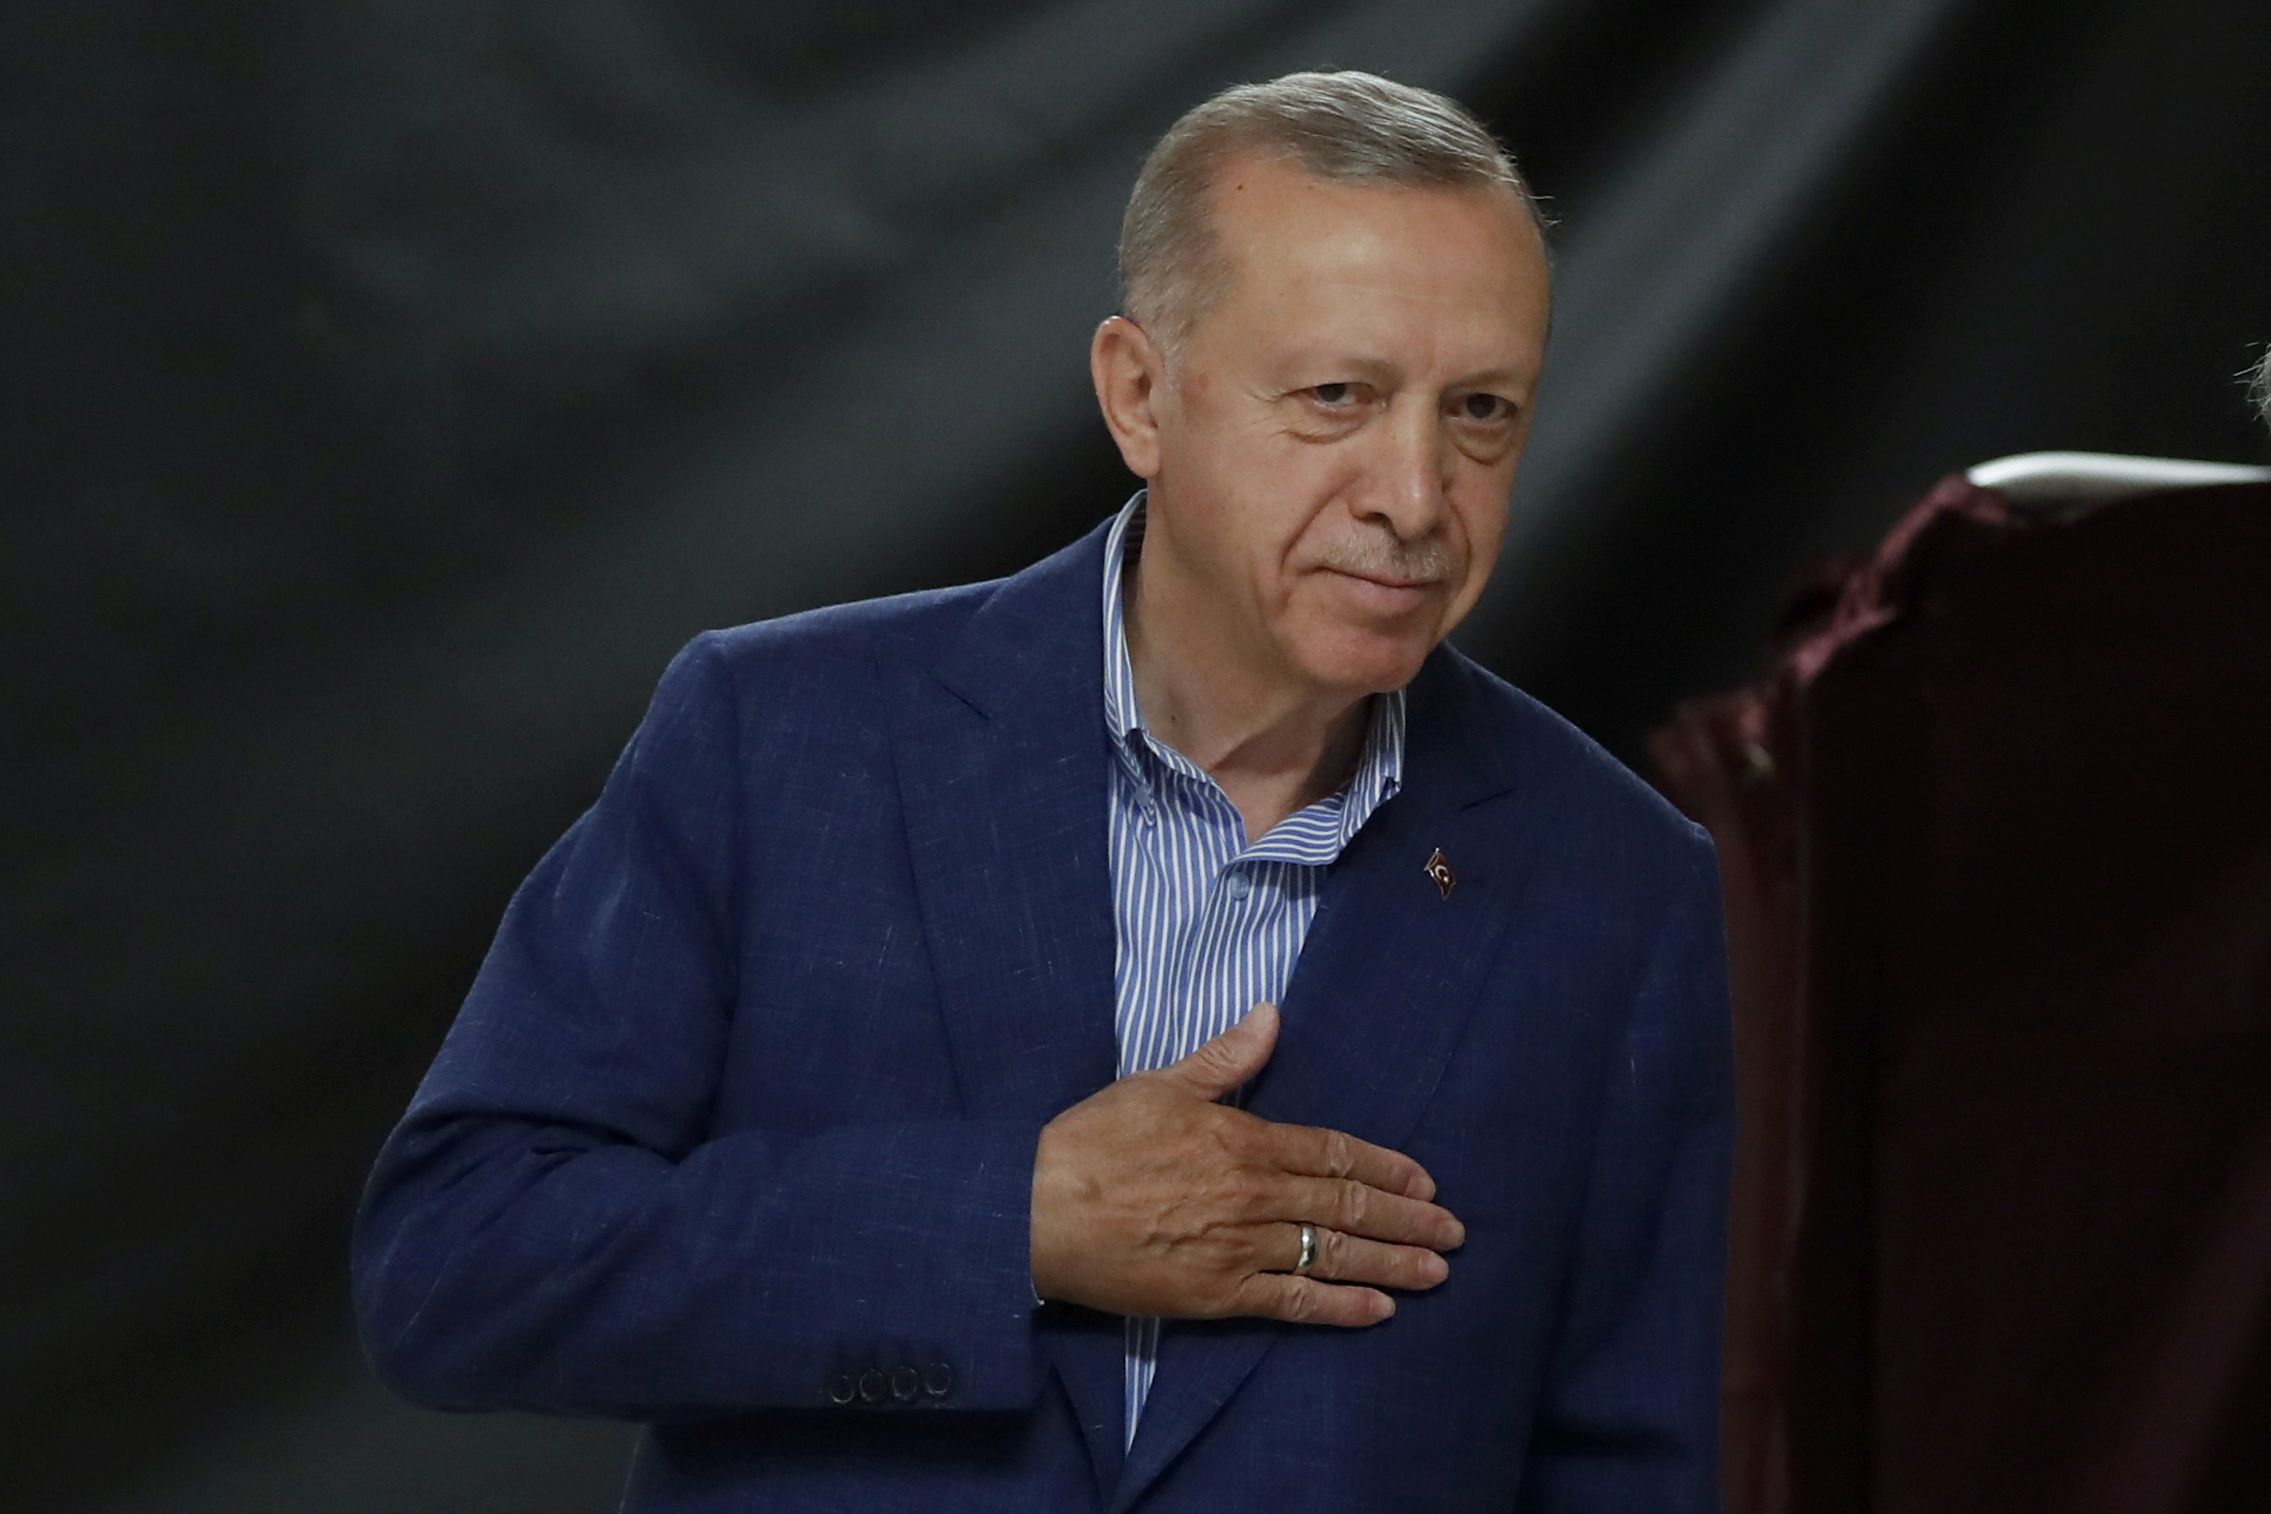 Τουρκία: Μεγάλος νικητής ο Ρ.Τ.Ερντογάν με 51,8% στον β’ γύρο των προεδρικών εκλογών – Γιατί επικράτησε (upd 4)